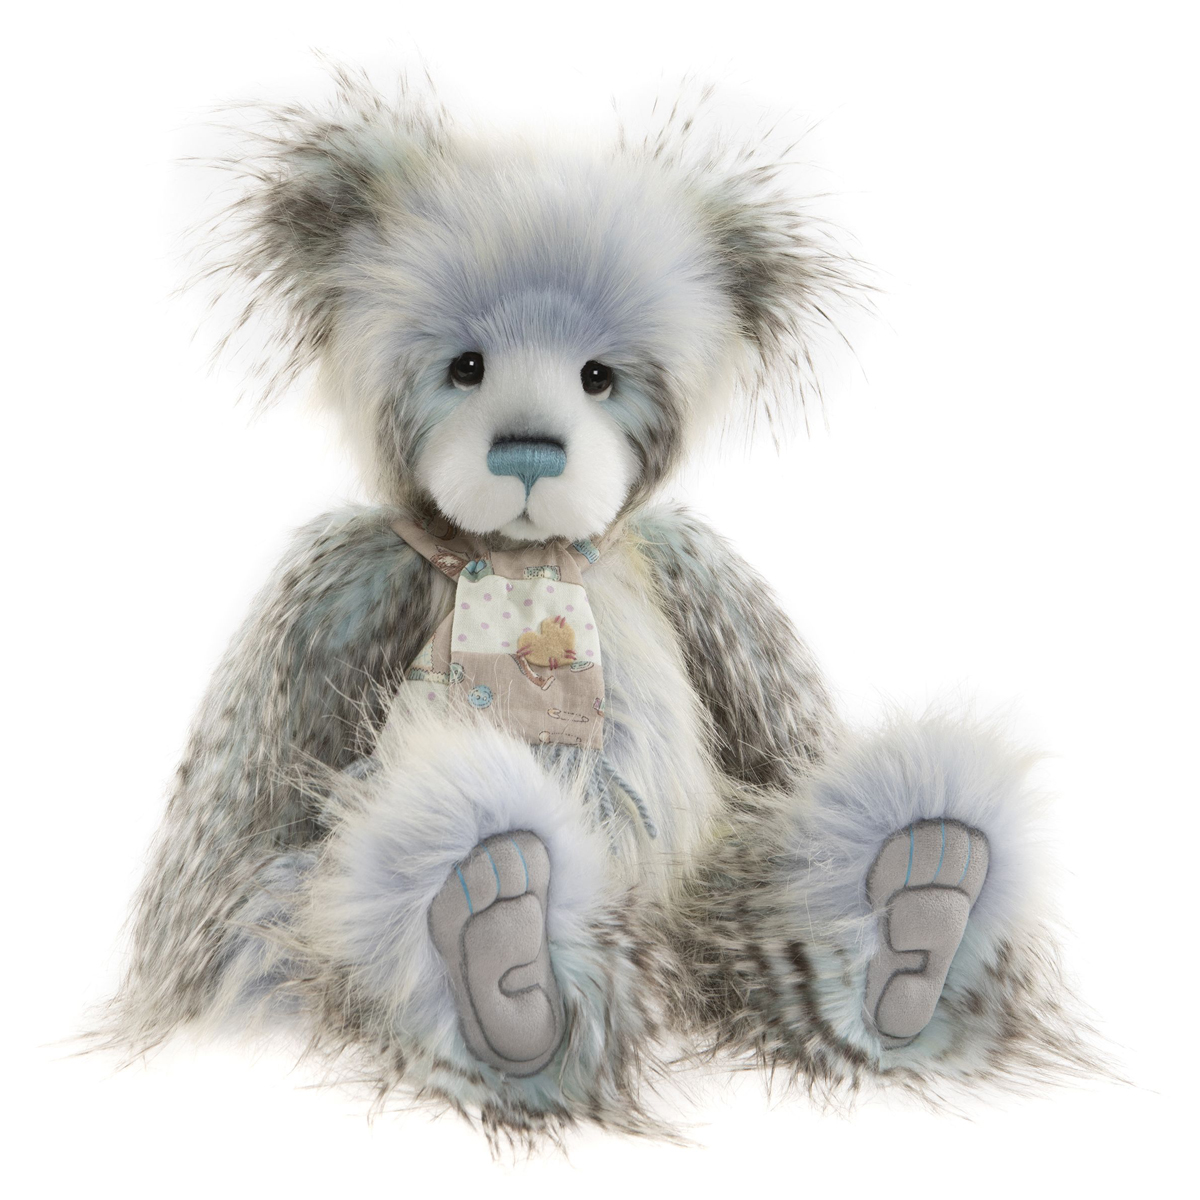 Charlie Bears Gina Teddy Bear - 50 cm